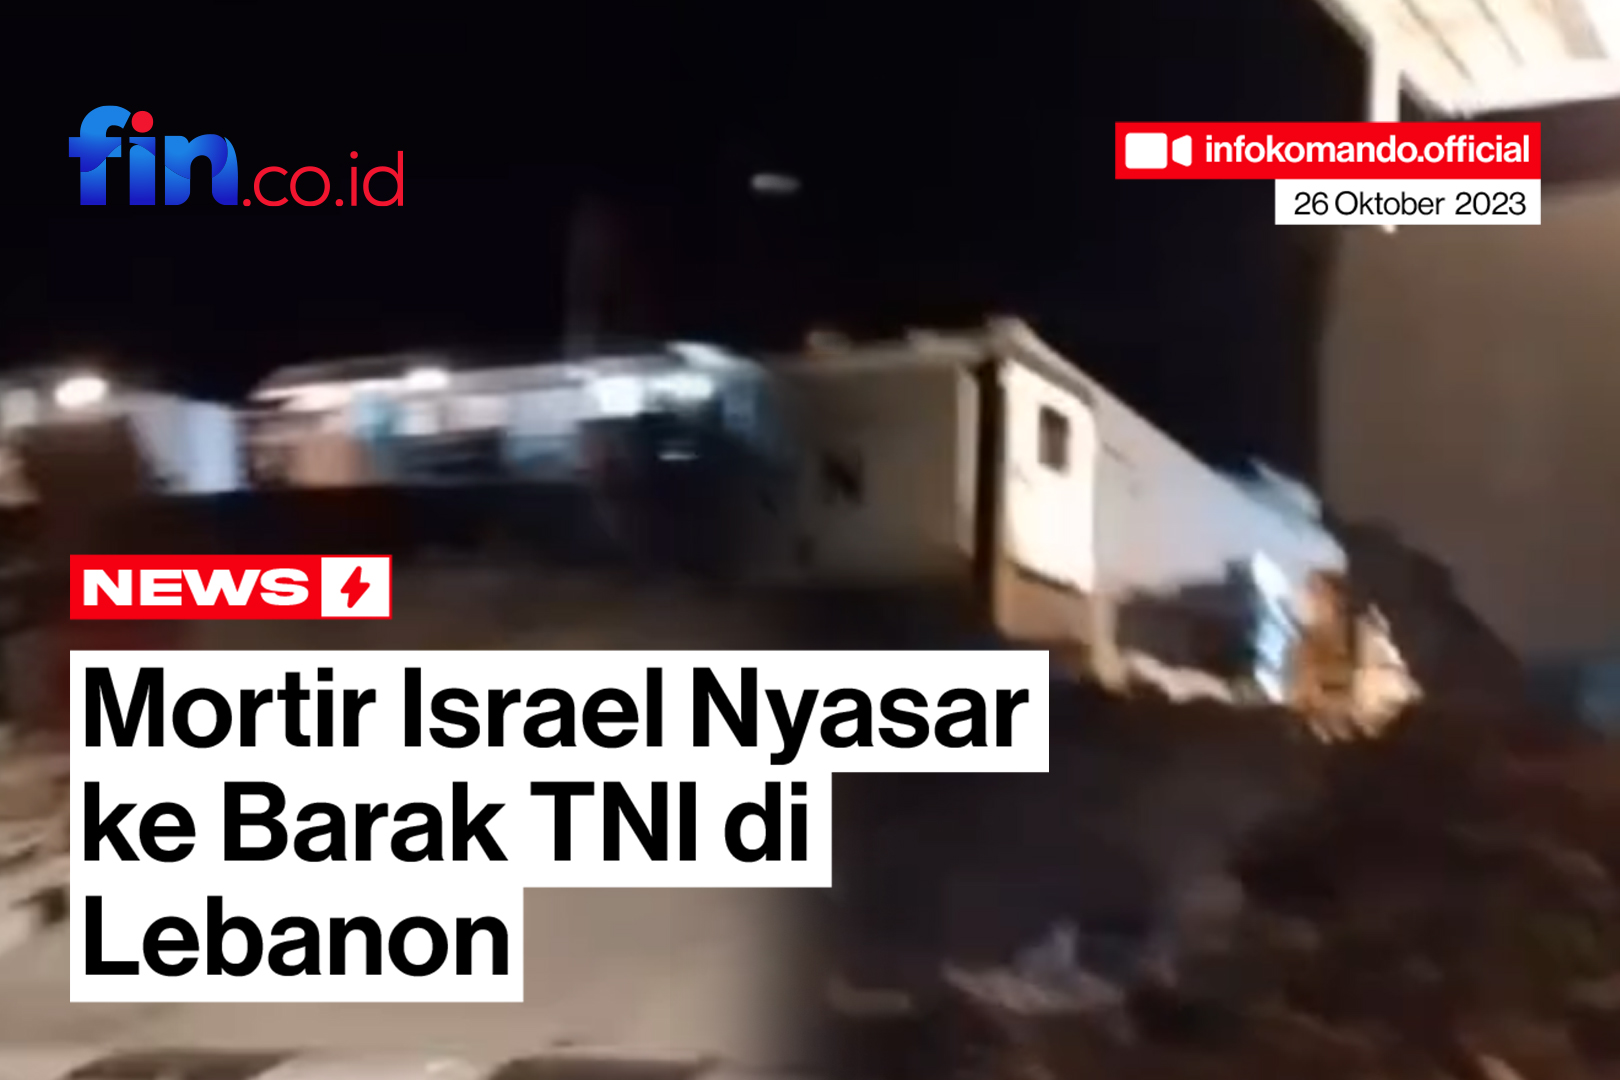 Markas Soedirman Camp di Lebanon Dimortir Israel, Kapuspen TNI: Bukan Mortir Tapi Flare